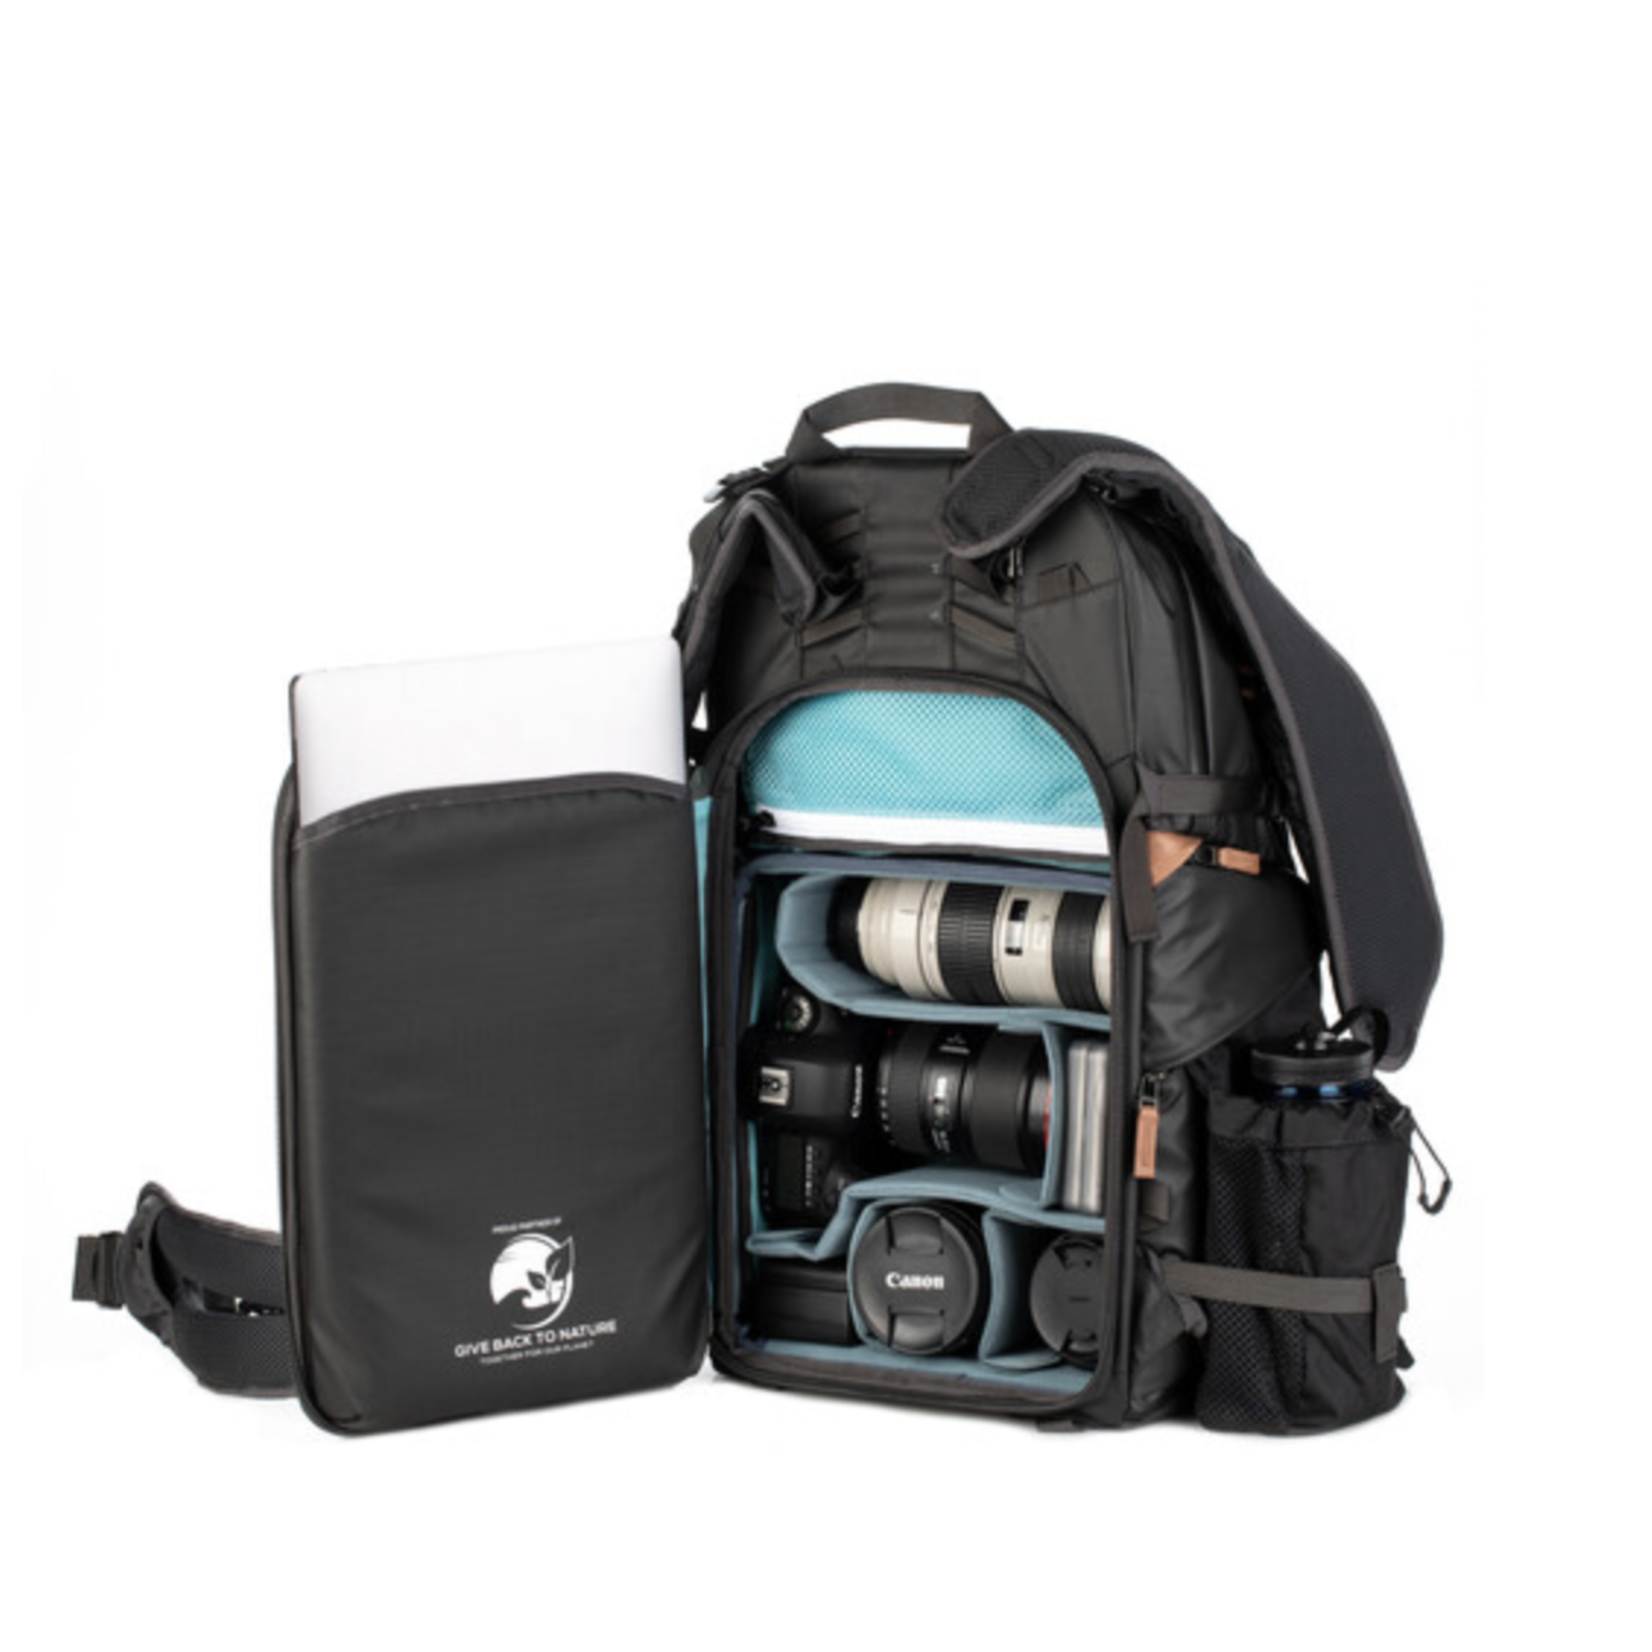 Shimoda Shimoda Designs Explore v2 35 Backpack Photo Starter Kit (Black)